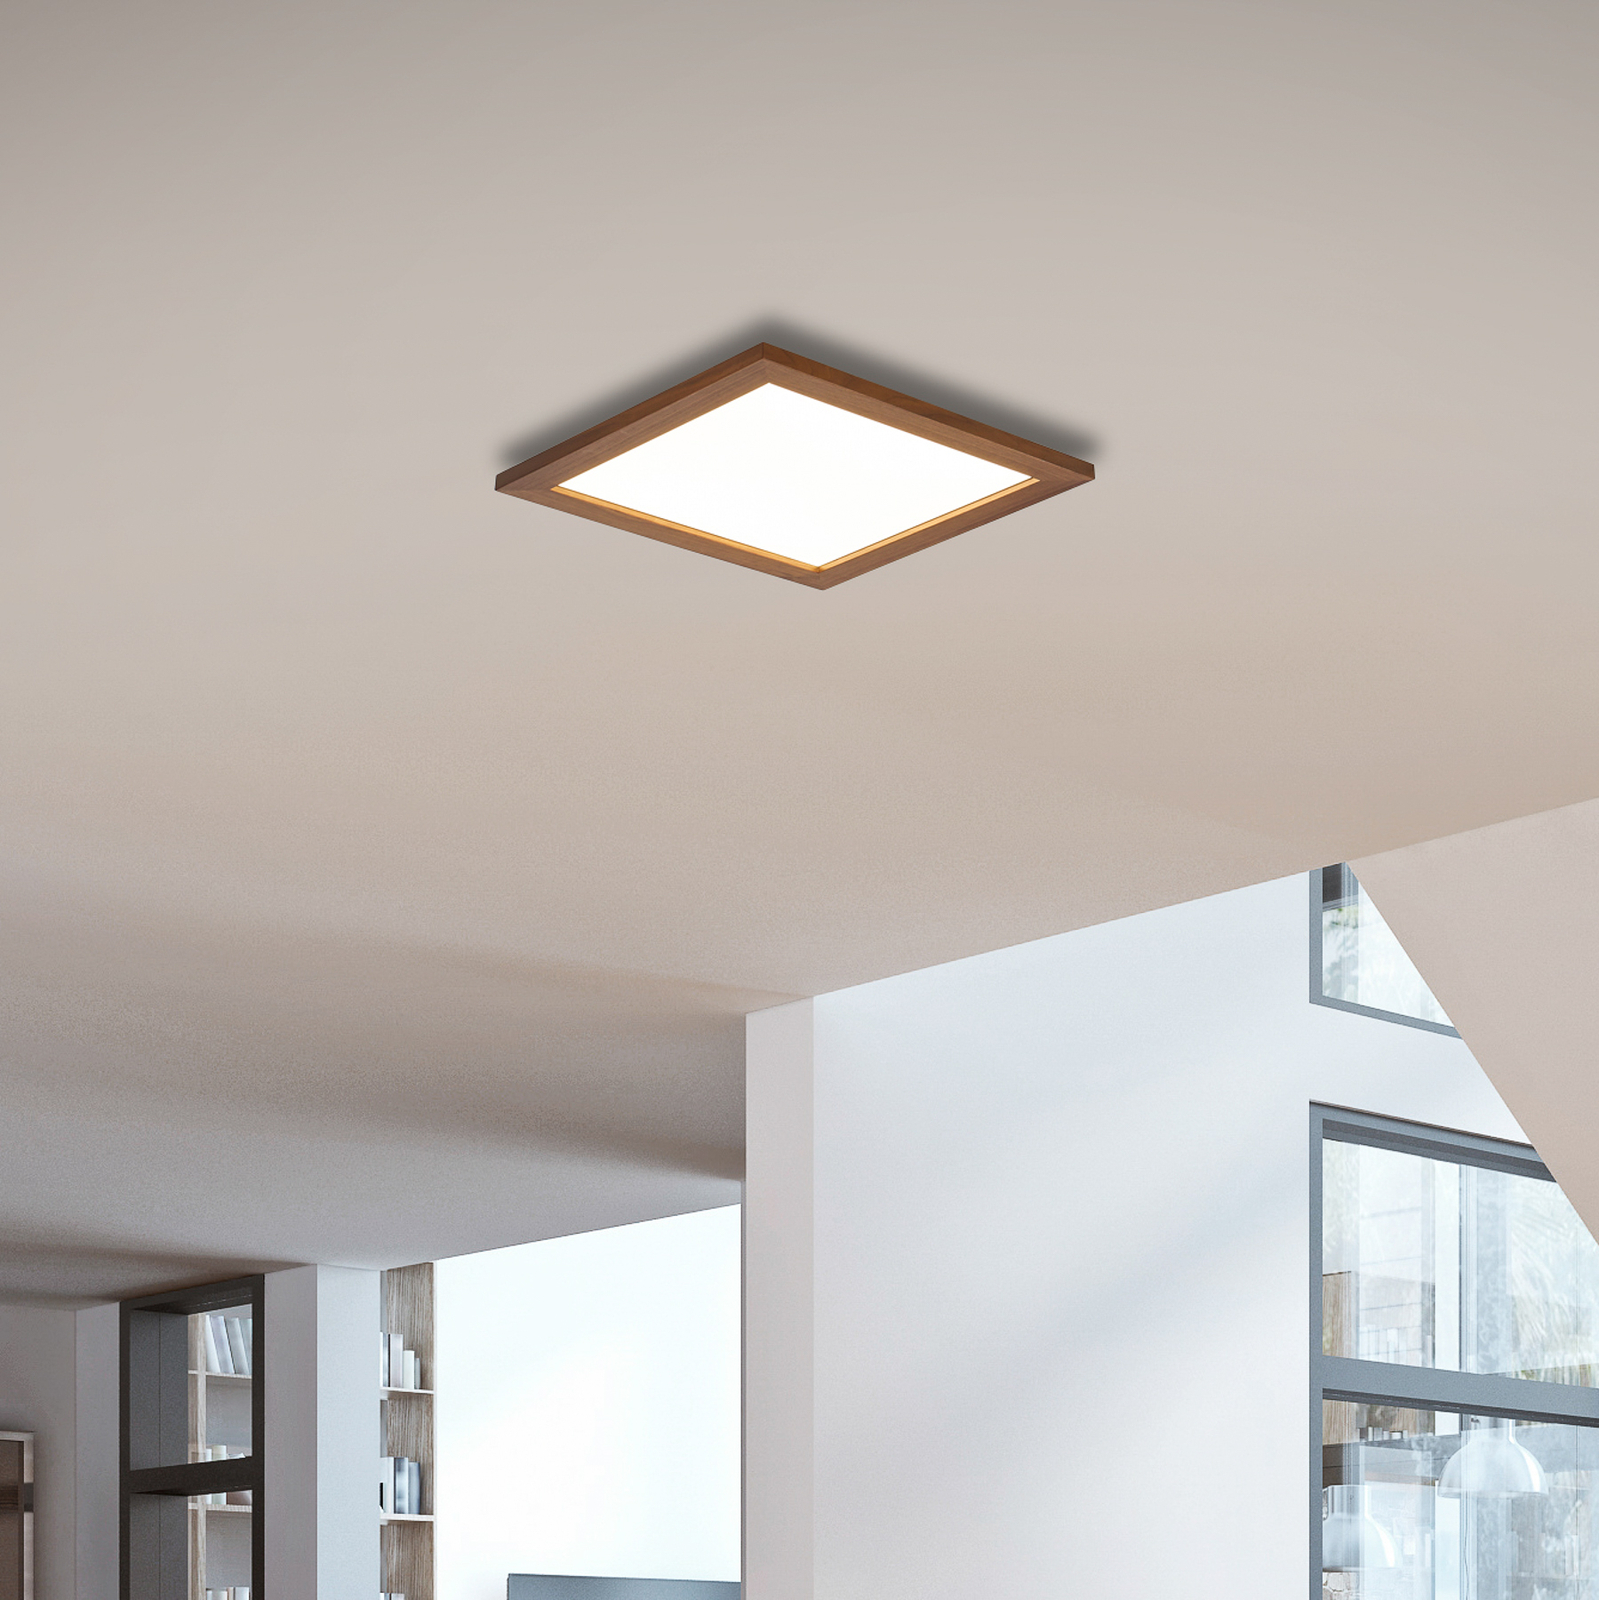 Quitani LED-Panel Aurinor, Nussbaum, 45 cm